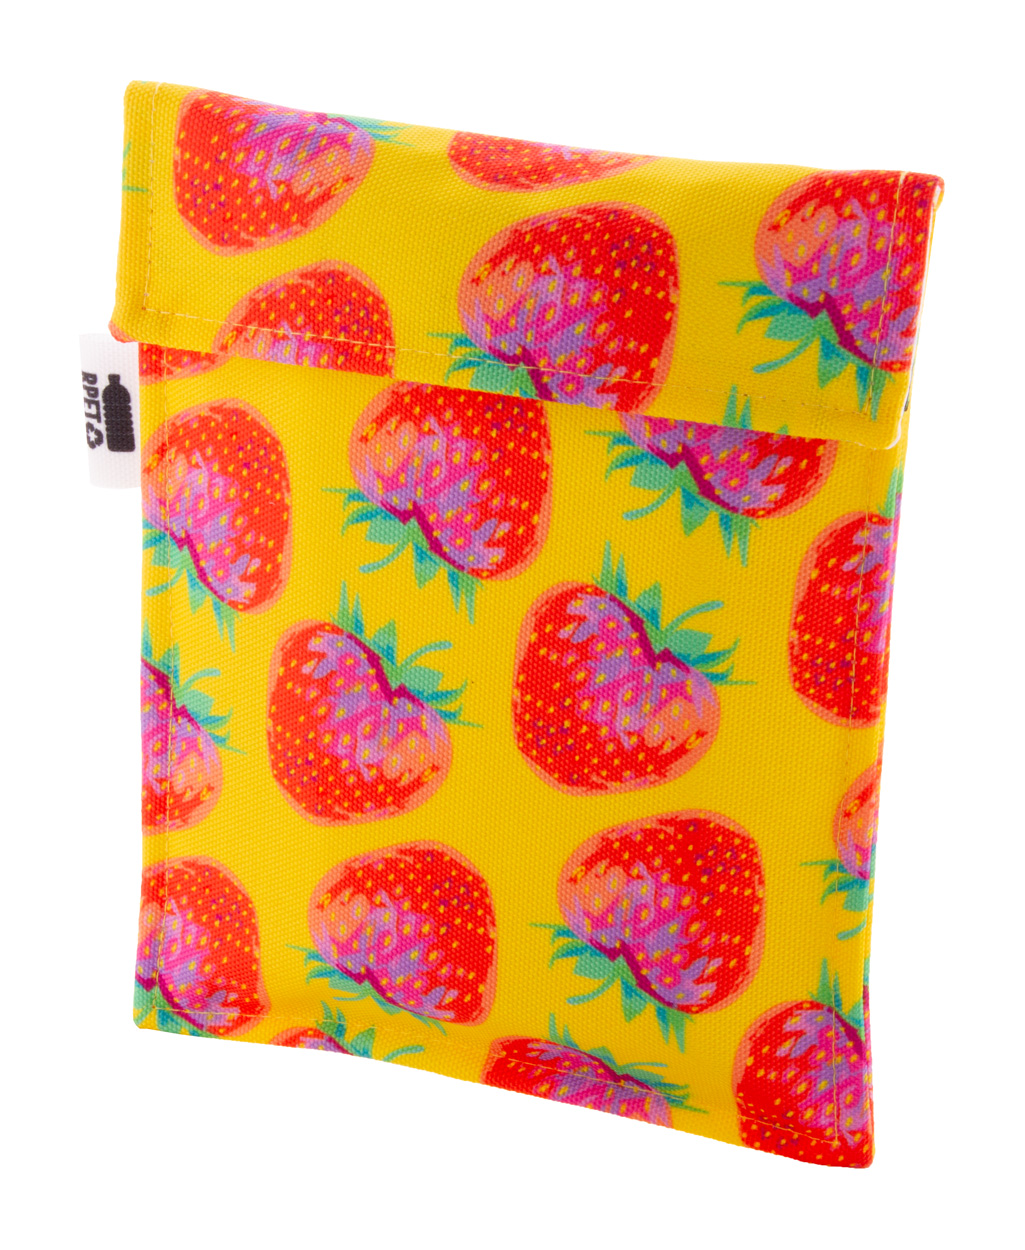 Promo  CreaSnack custom snack bag